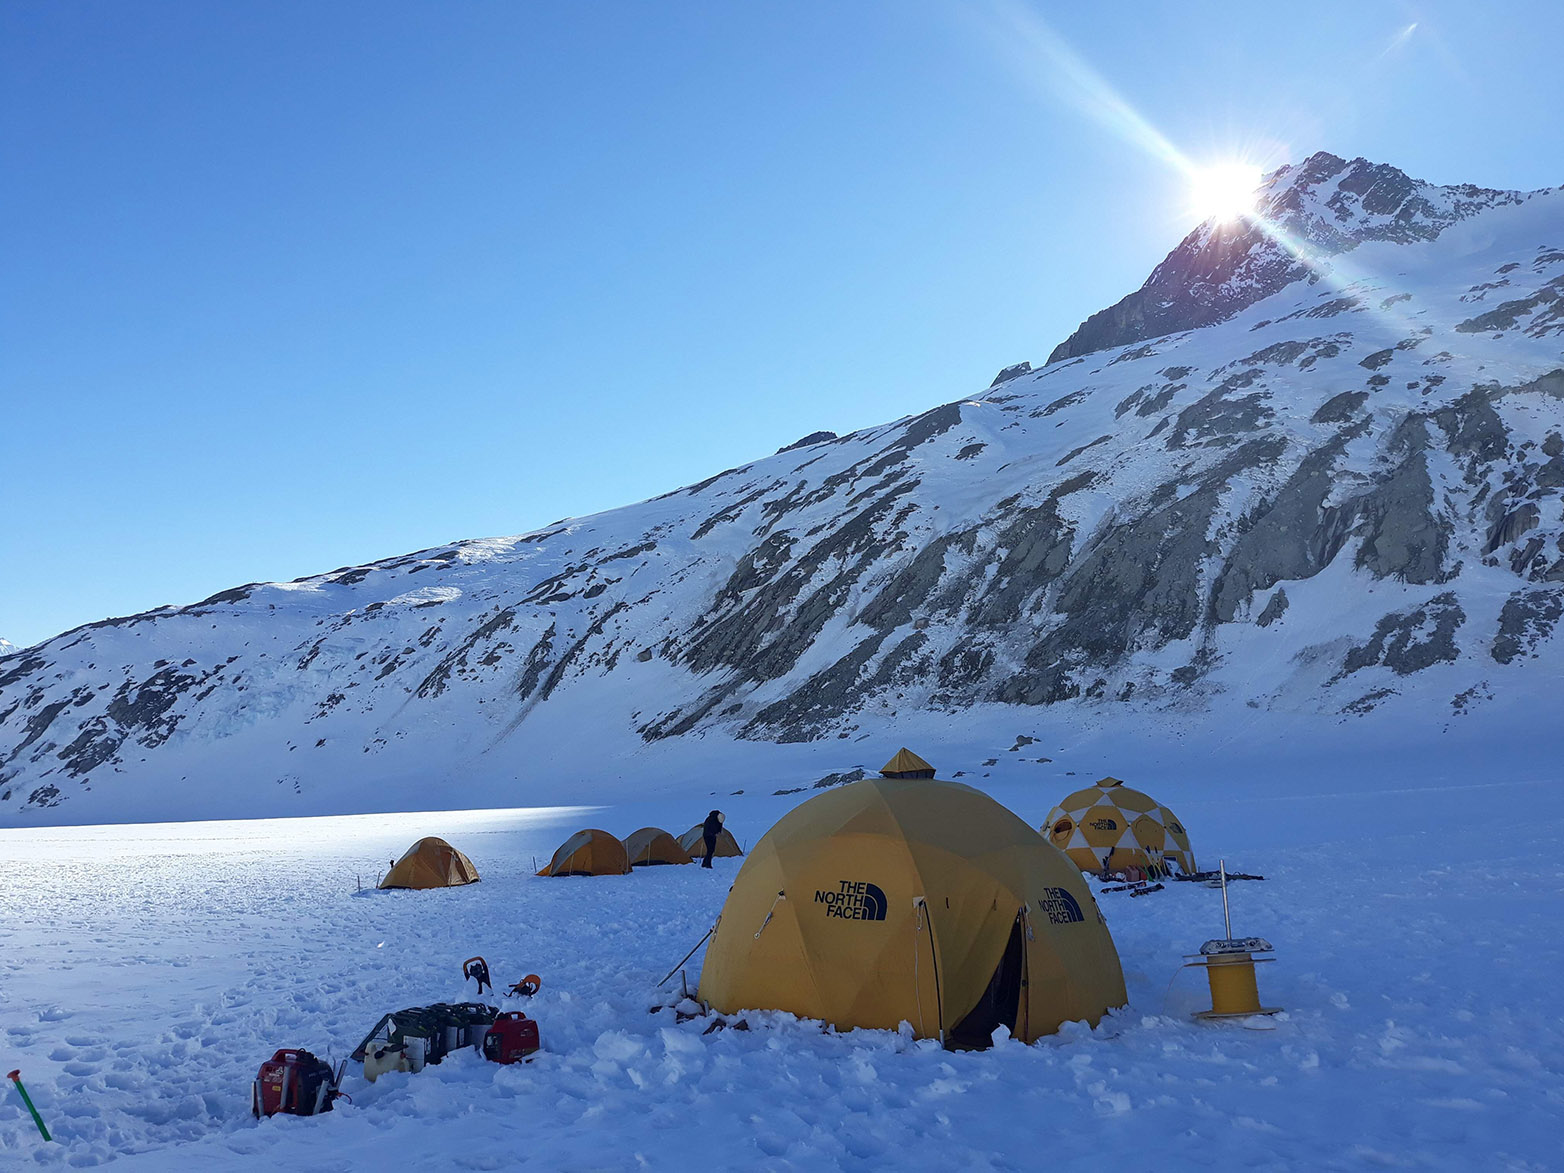 Vergr?sserte Ansicht: Um ihre neue Methode zu testen, bewohnten die Forschenden mehrere Tage ein Basislager auf dem Gletscher.